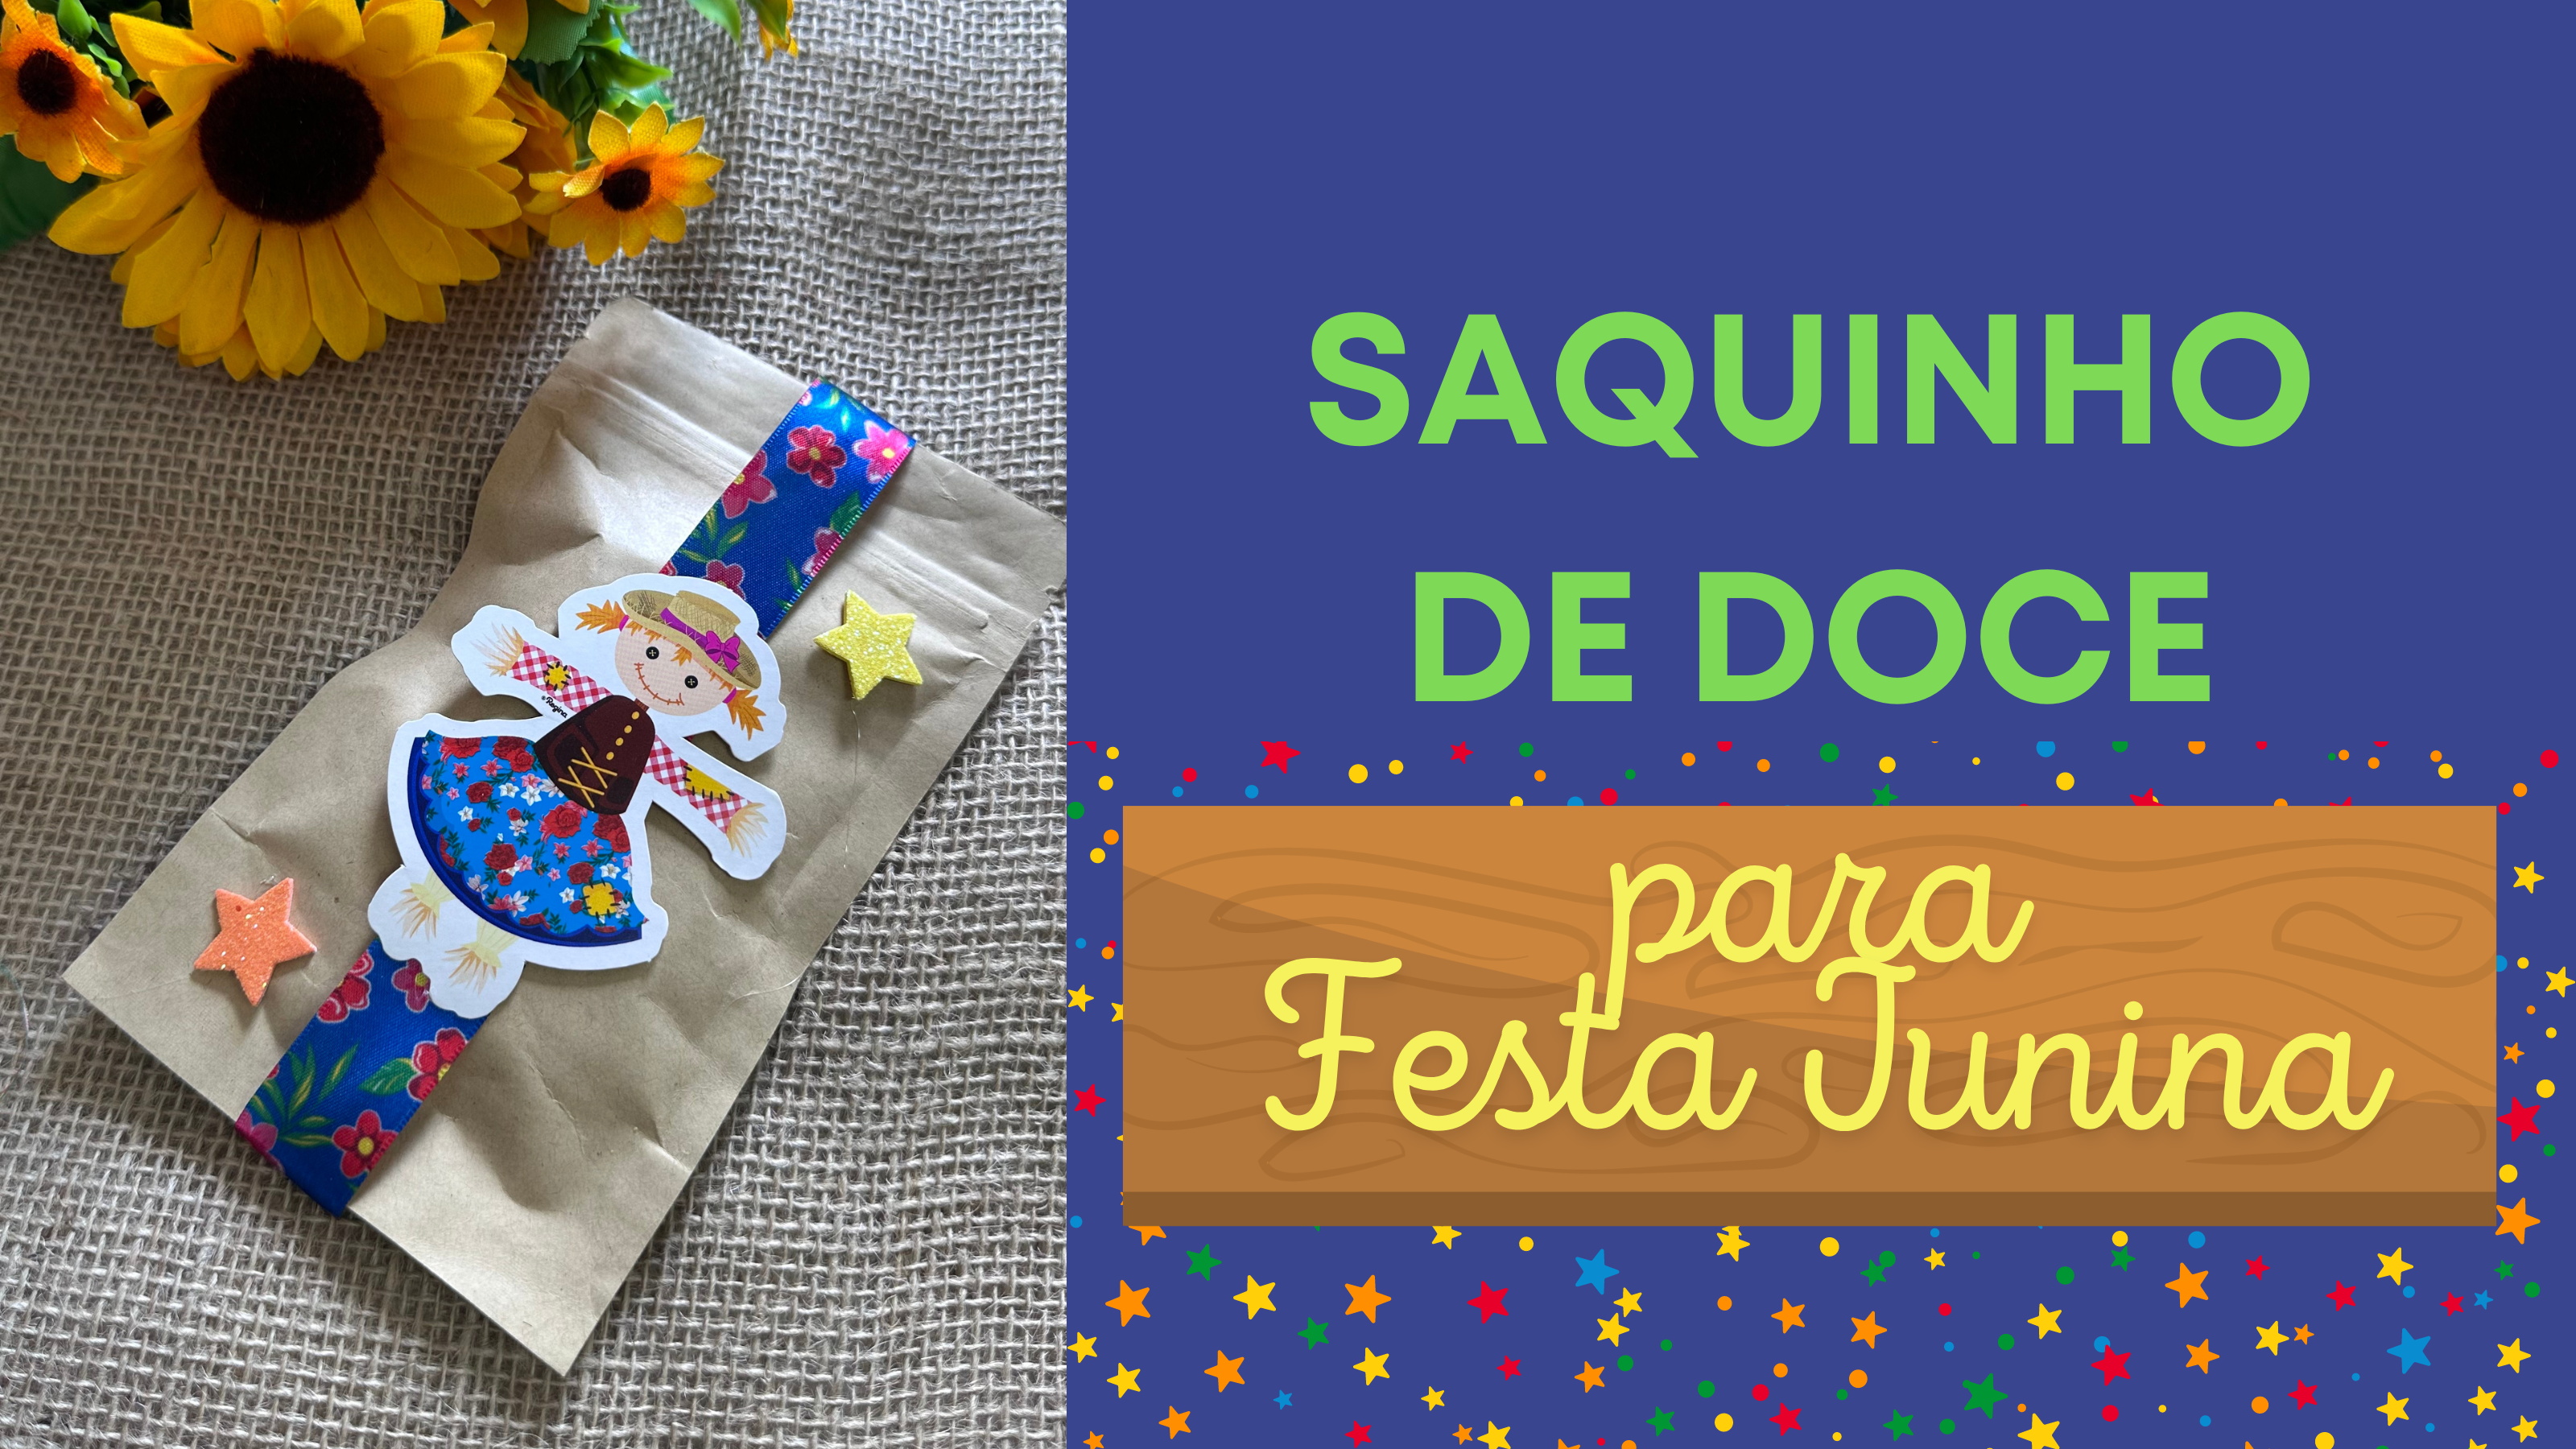 Saquinho de Doce Decorado para Festa Junina DIY – Inspire sua Festa